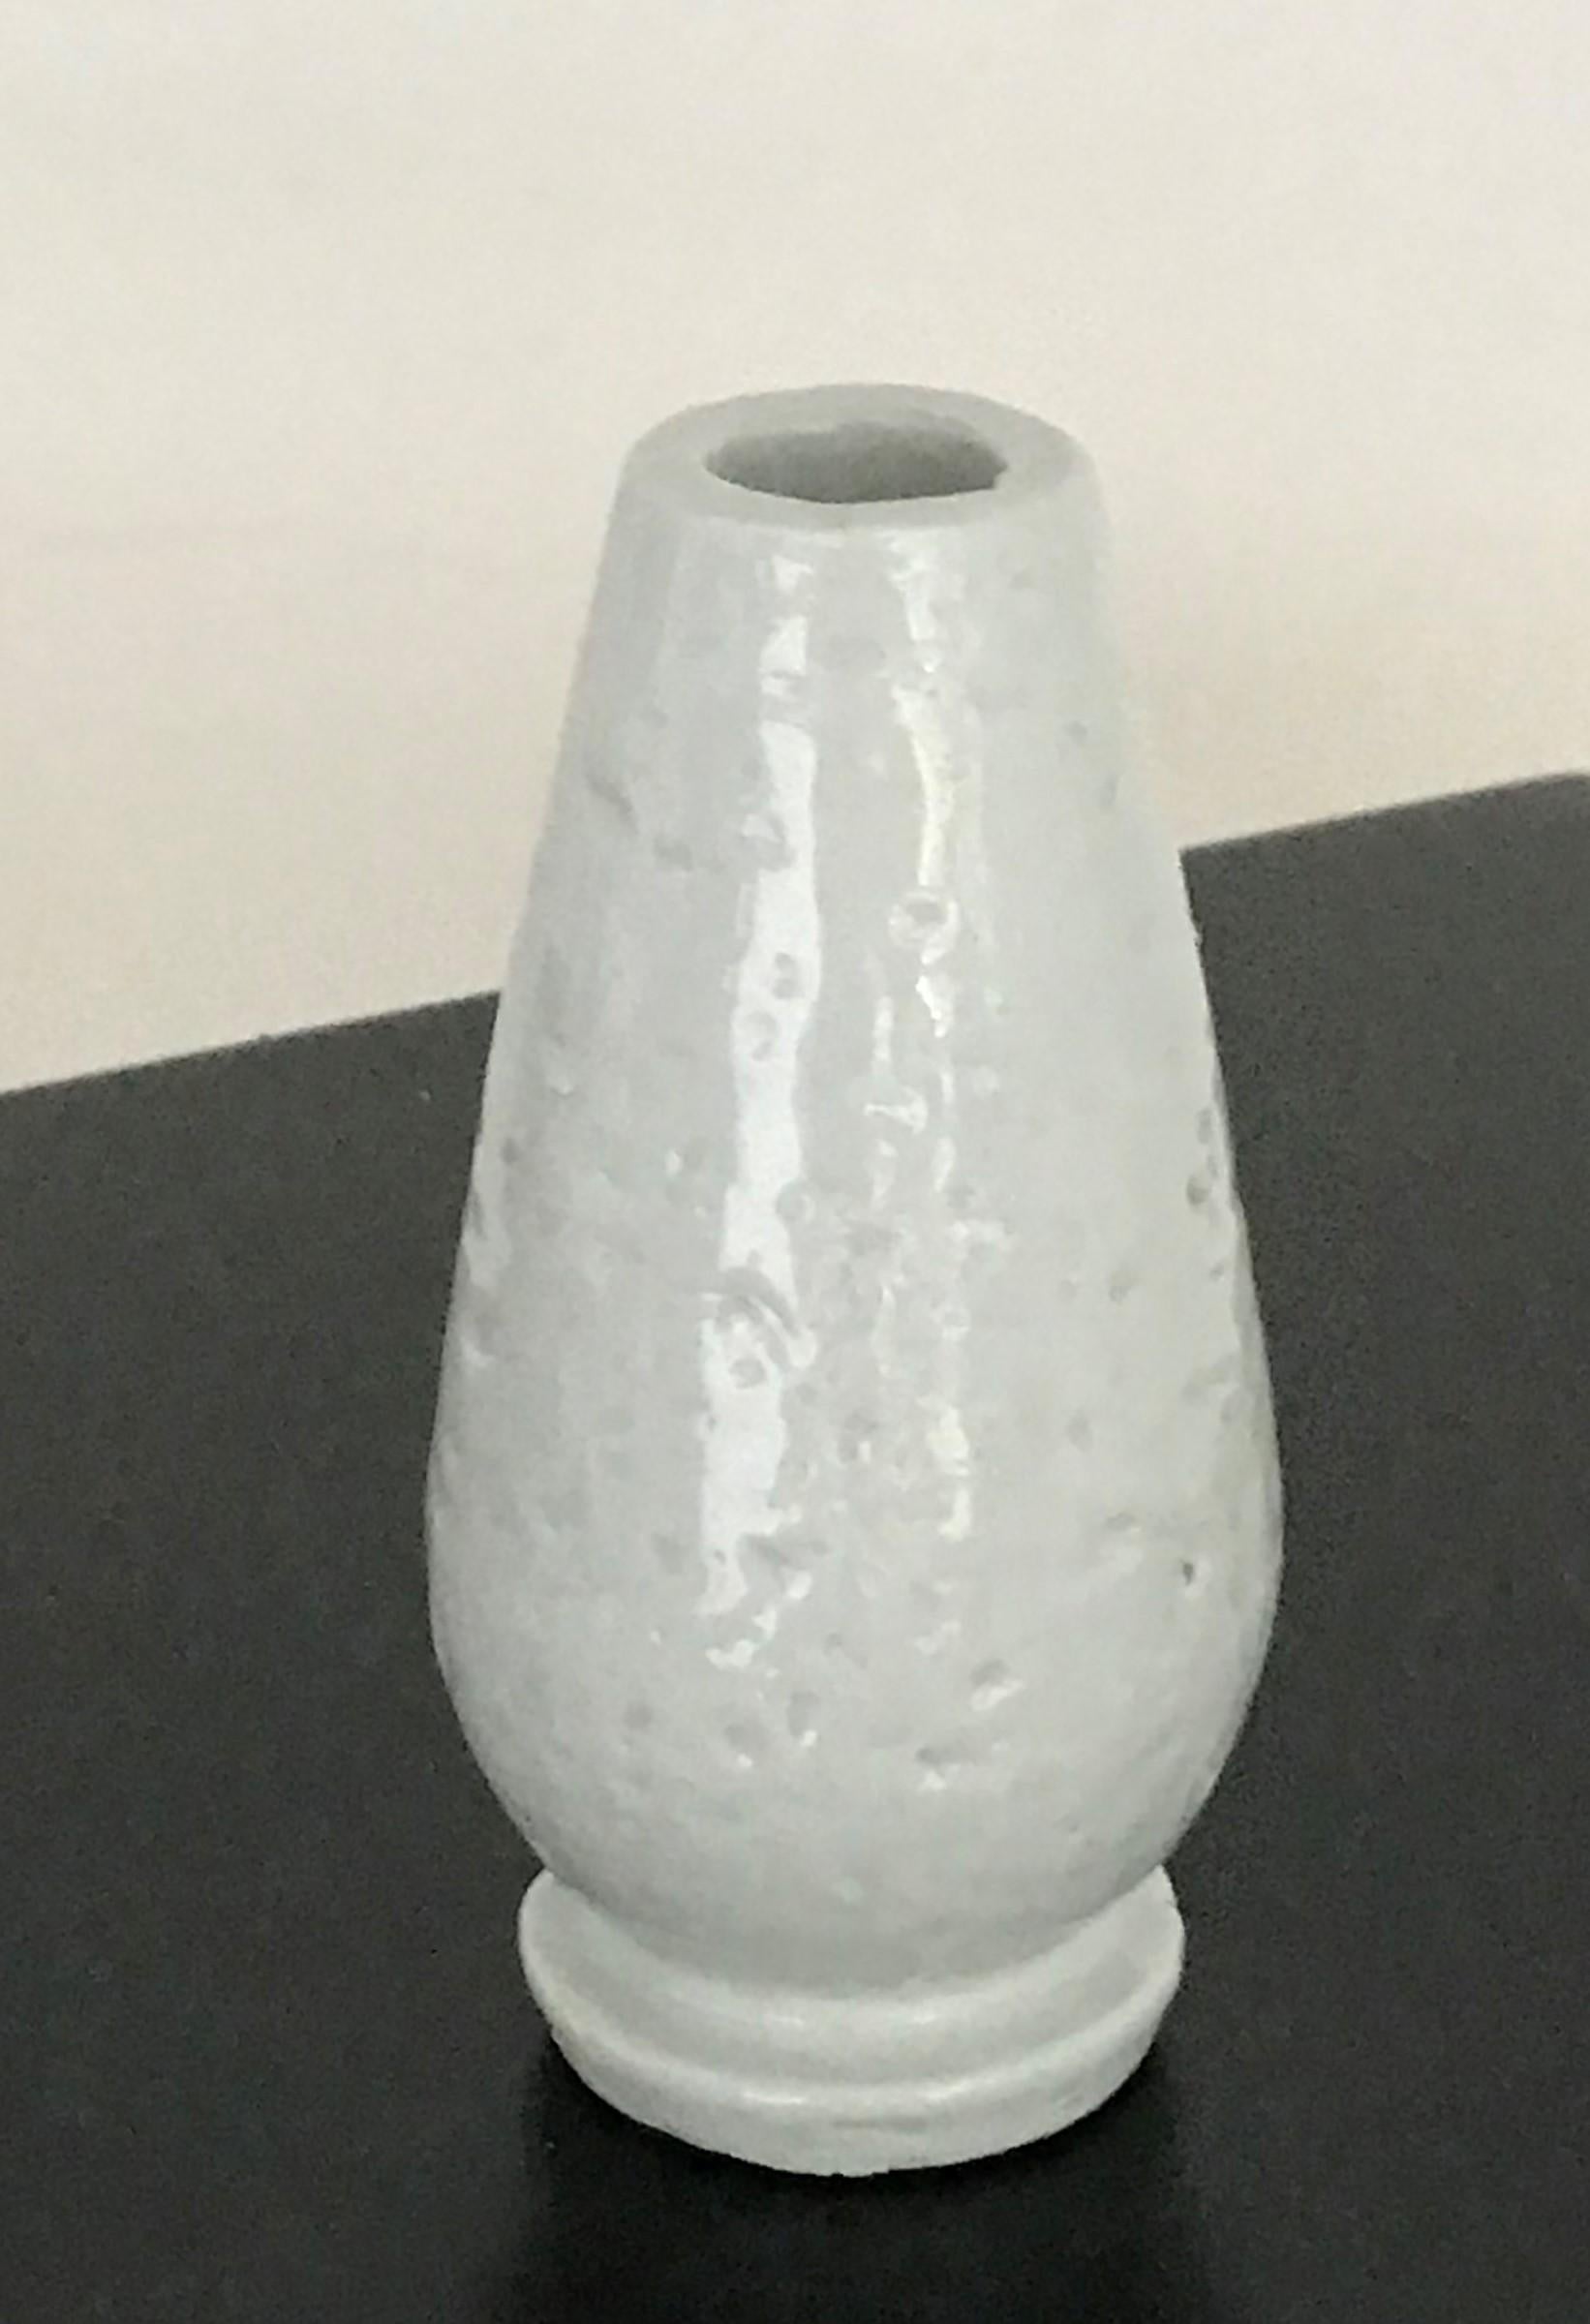 REDUZIERT VON $280....Erlesene Kreation von Gunnar Nylund (1914-1997) während seiner Amtszeit als künstlerischer Leiter von Rörstrand von 1932 bis in die 1950er Jahre. Die Vase hat eine glänzende weiße Glasur über einem rauen, rustikalen Korpus, was